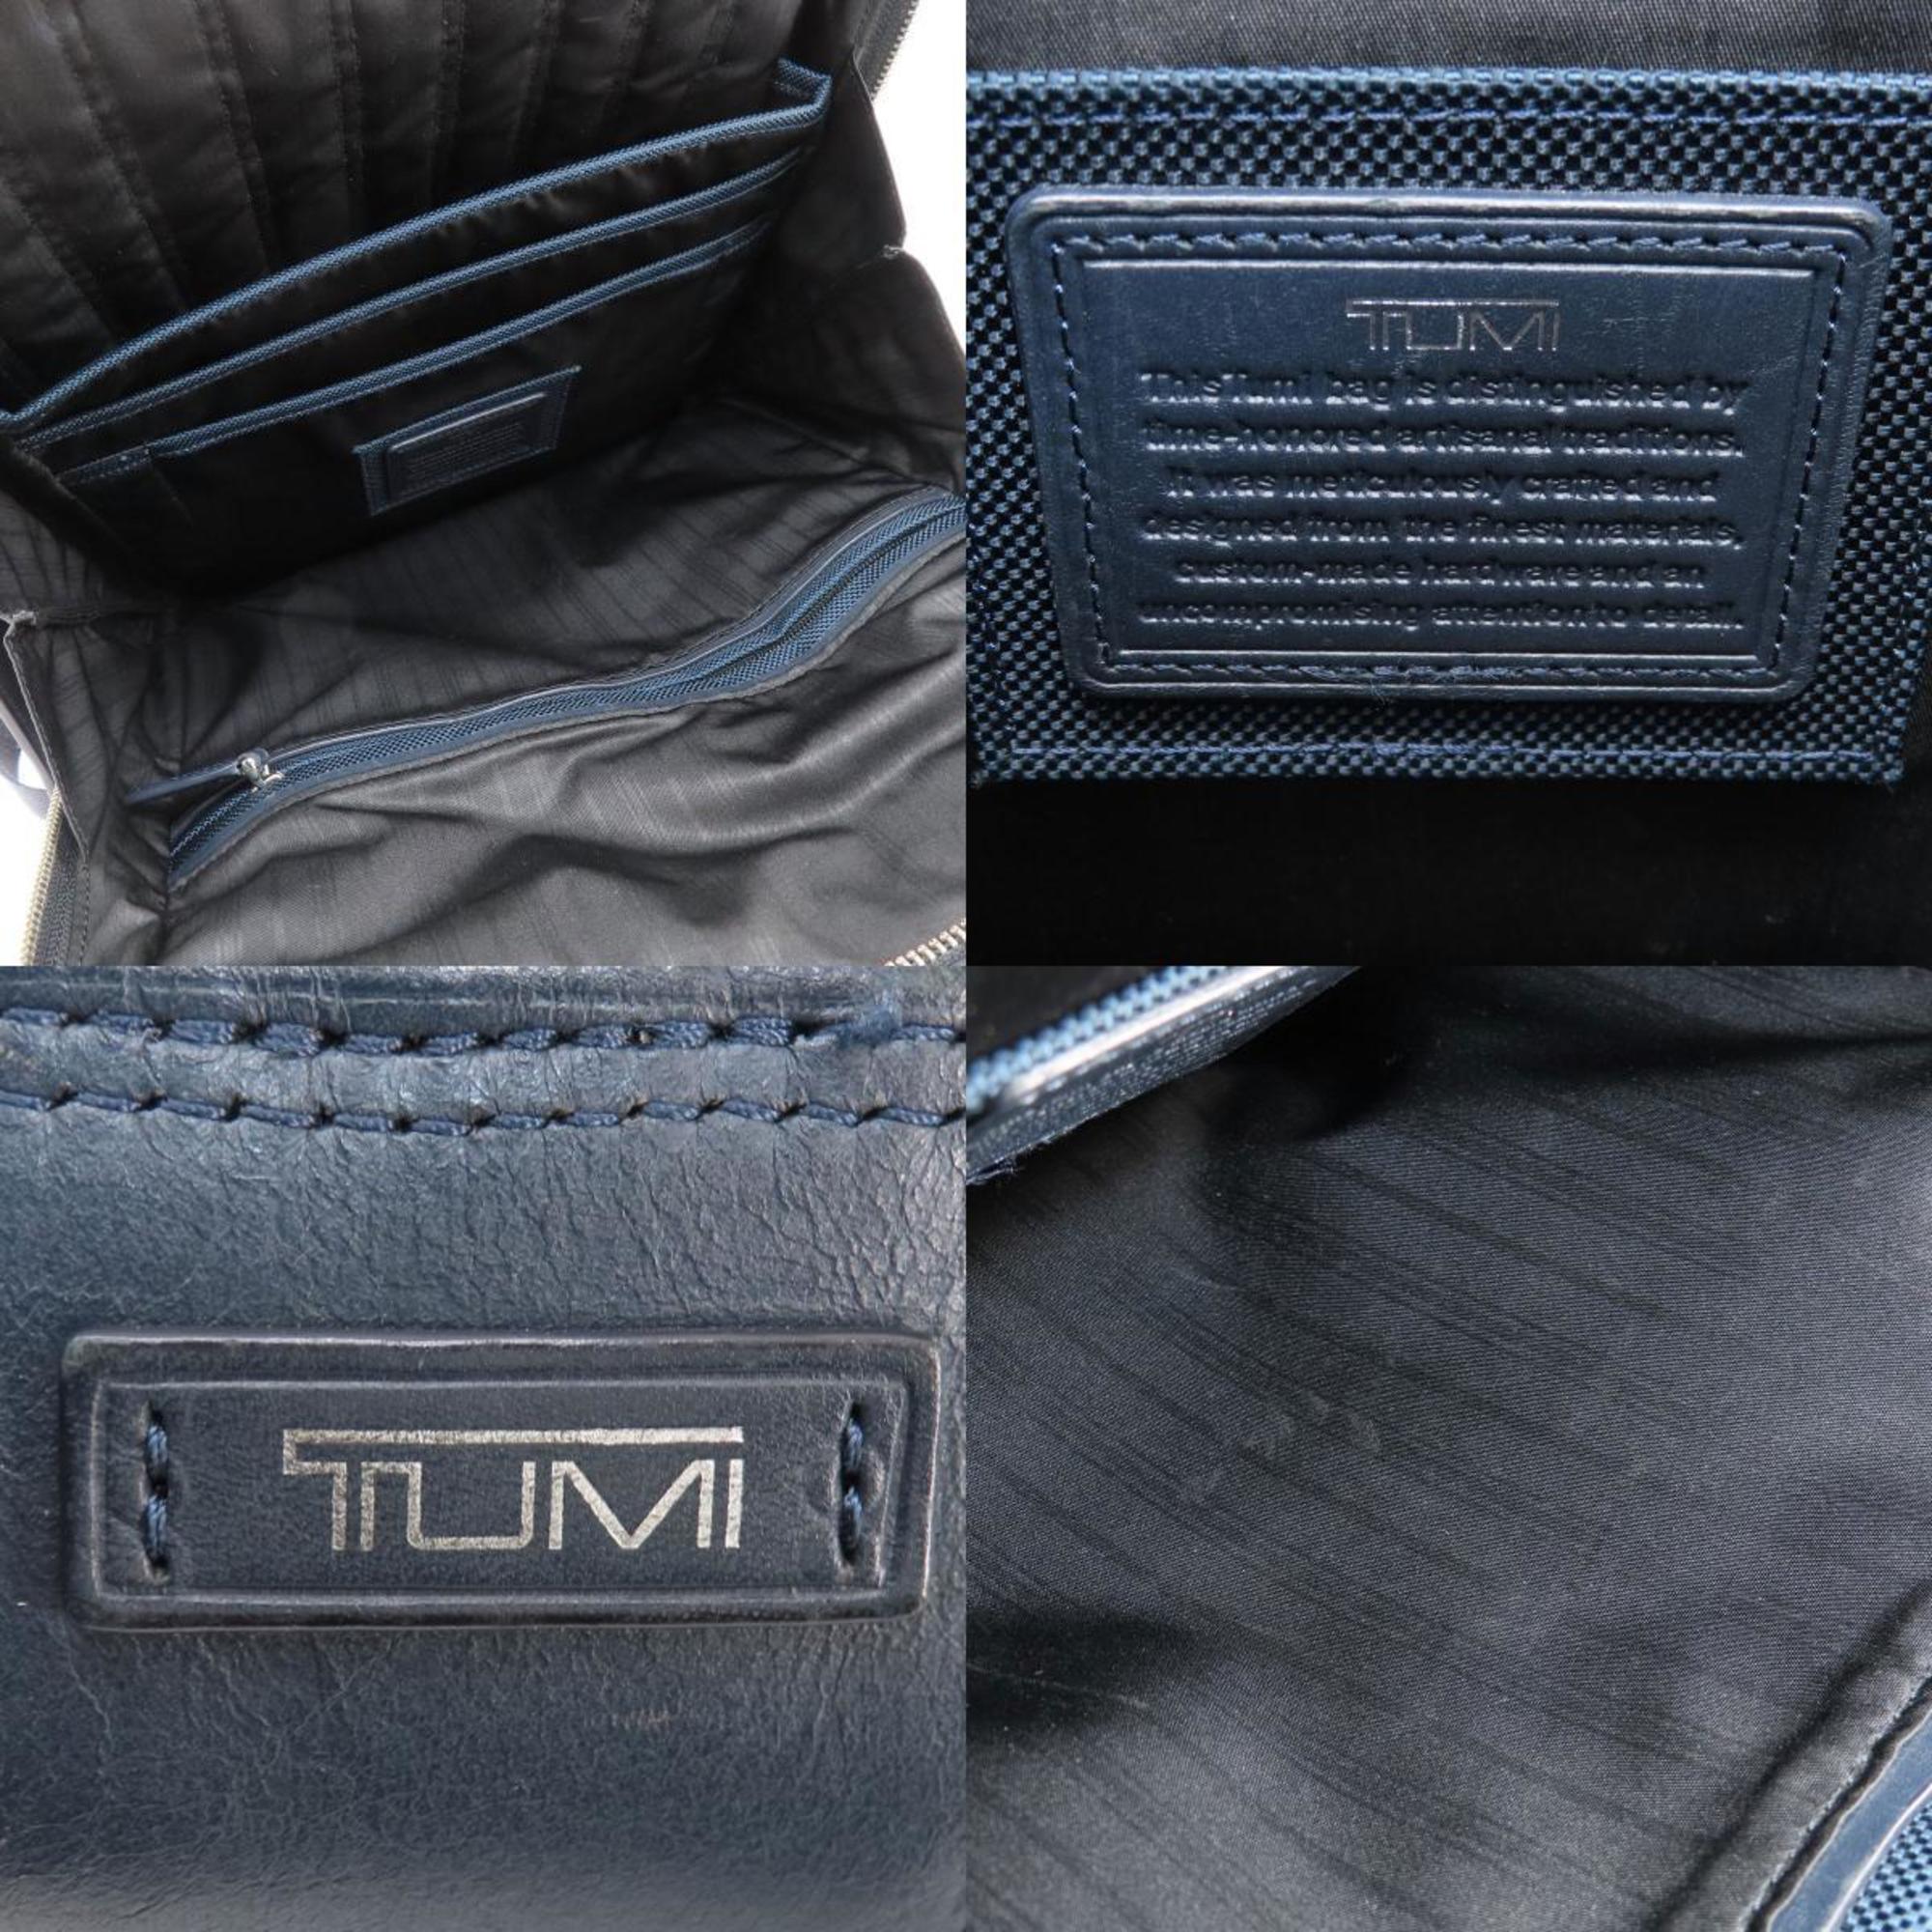 TUMI Design Backpack/Daypack Nylon Material Women's